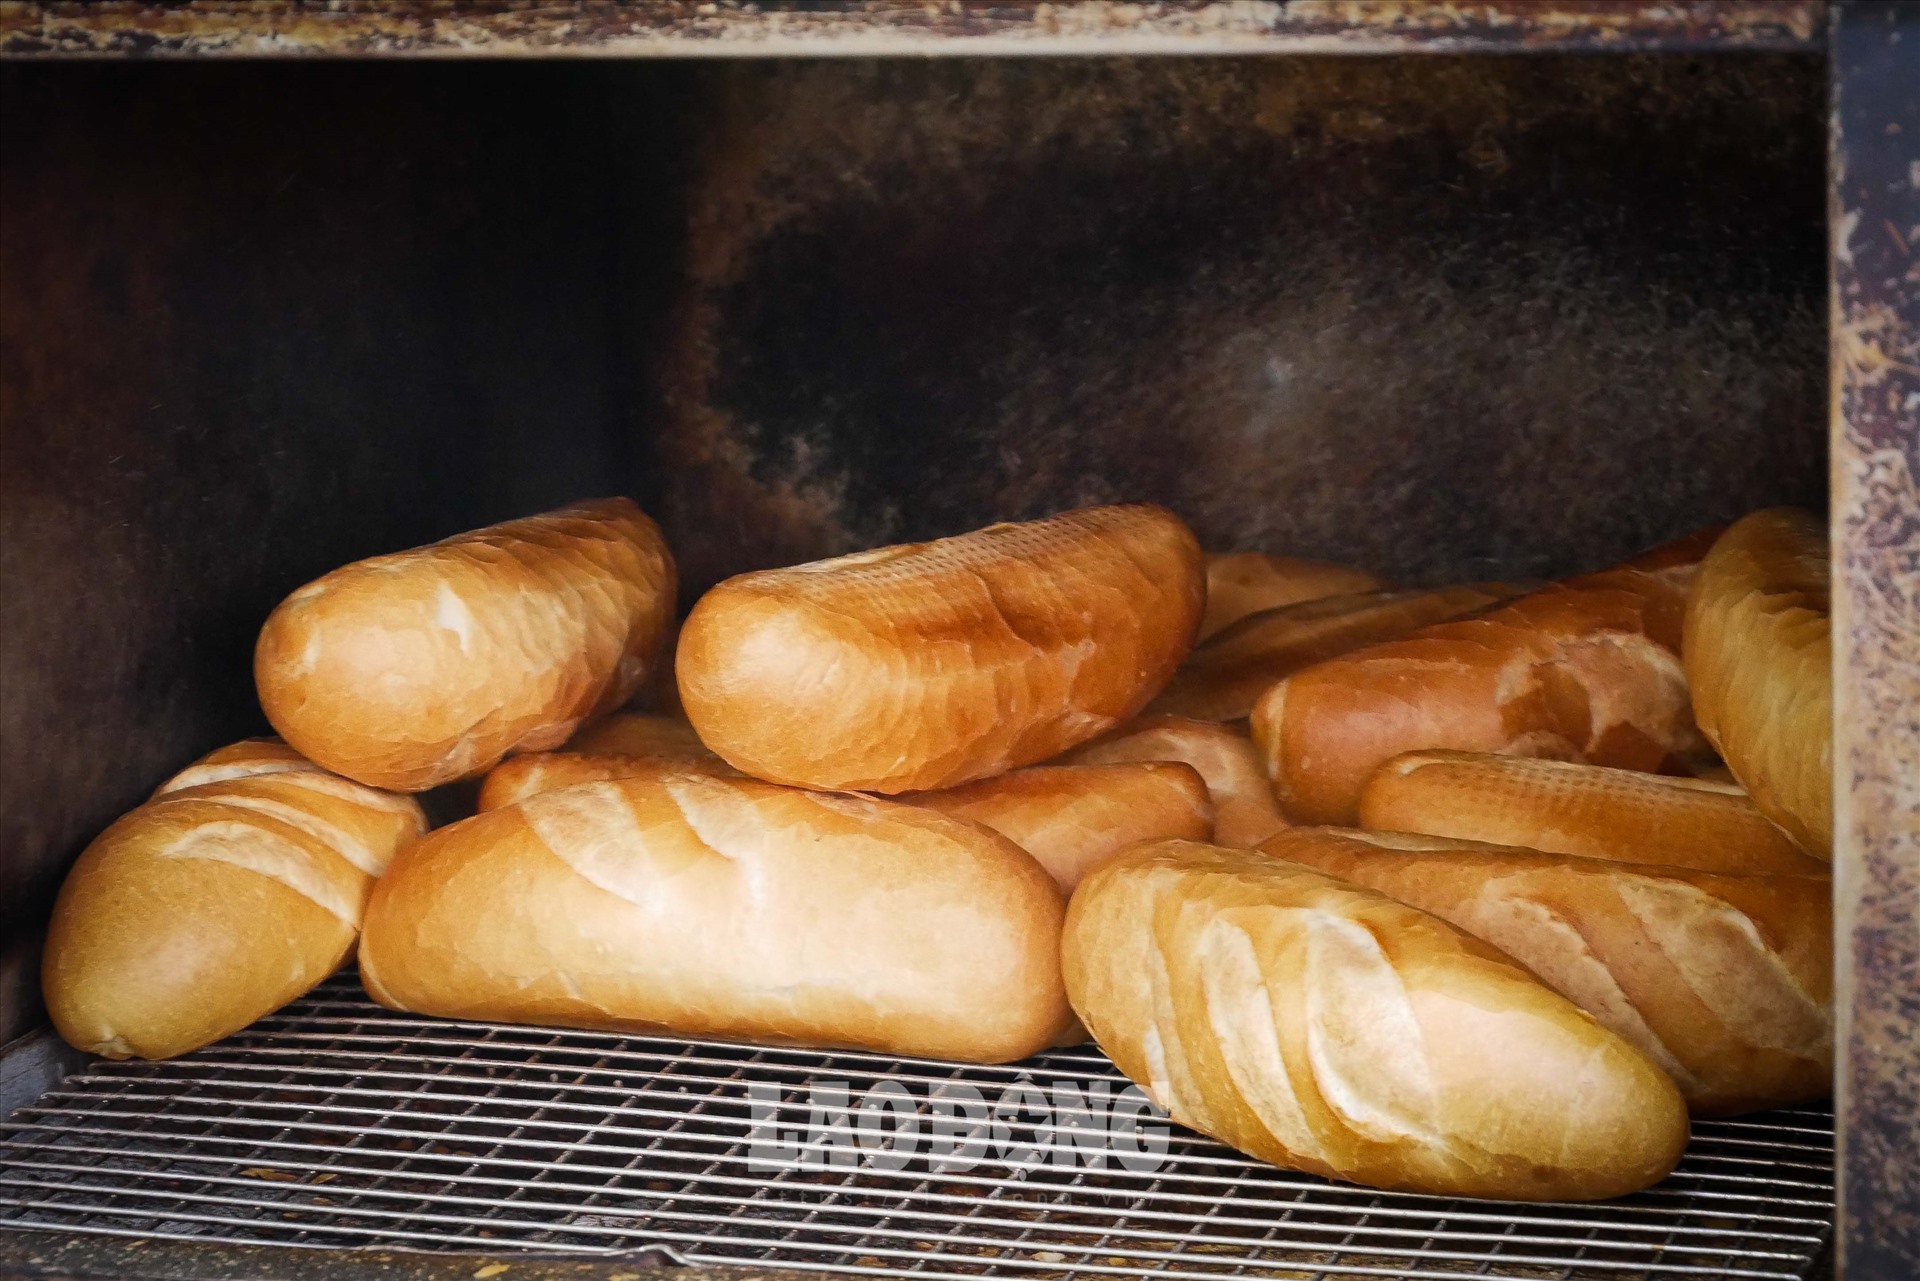 Bên cạnh đó, những chiếc bánh mì được nướng nóng hổi trong lò ngay trước khi chế biến khiến người ăn cảm nhận được vị nóng ròn tan trong miệng.